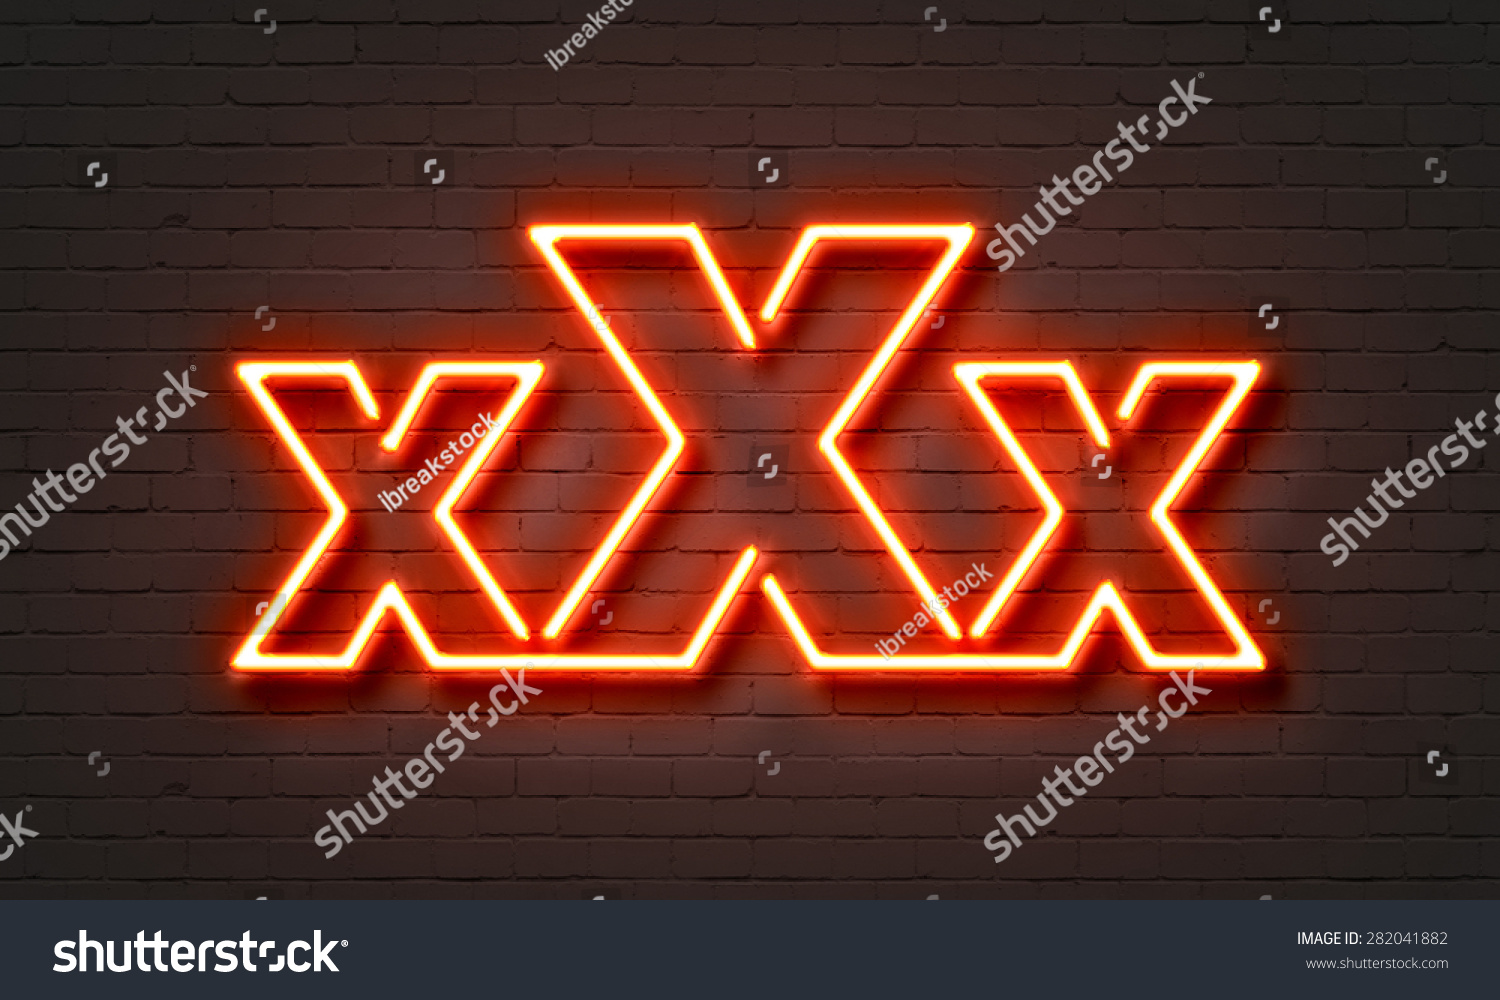 Xxx Neon Sign On Brick Wall Stock Illustration 282041882 2745